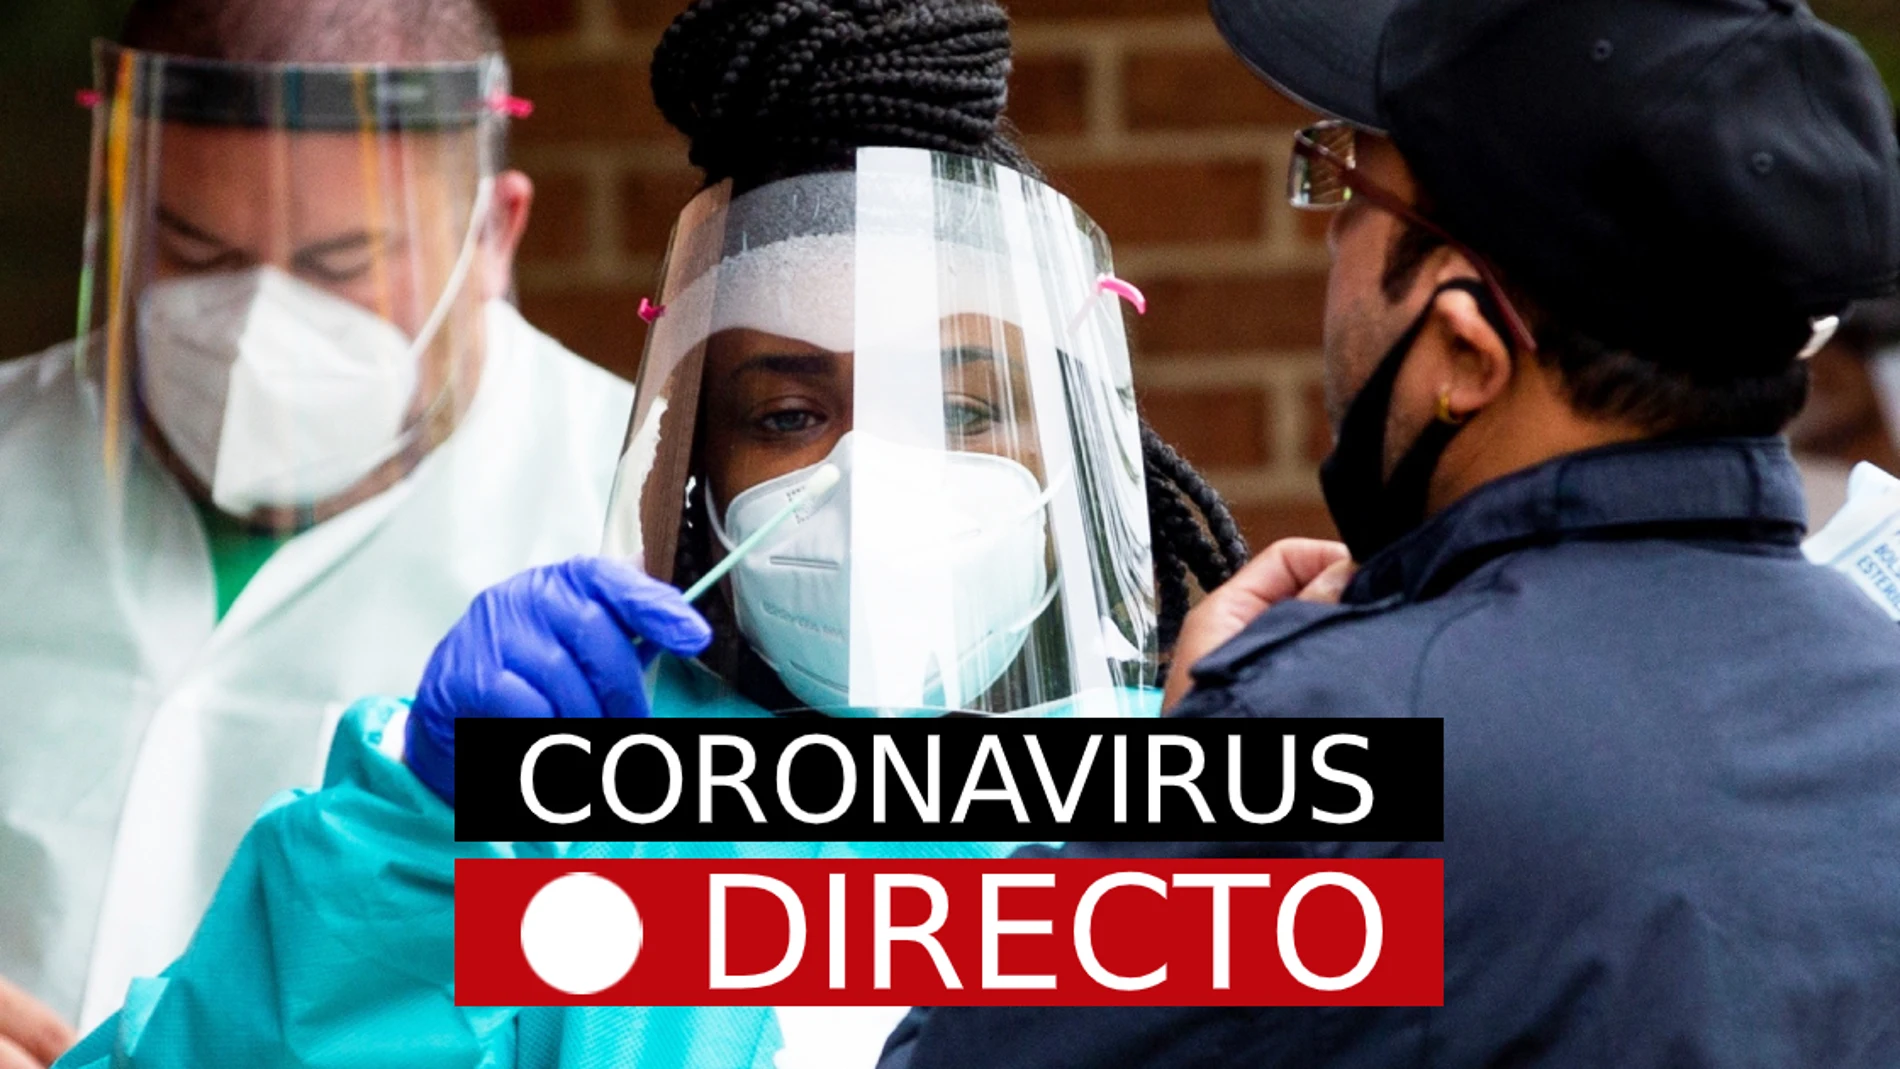 Coronavirus en Madrid, Burgos y España, hoy: Noticias de última hora y casos del COVID-19, EN DIRECTO